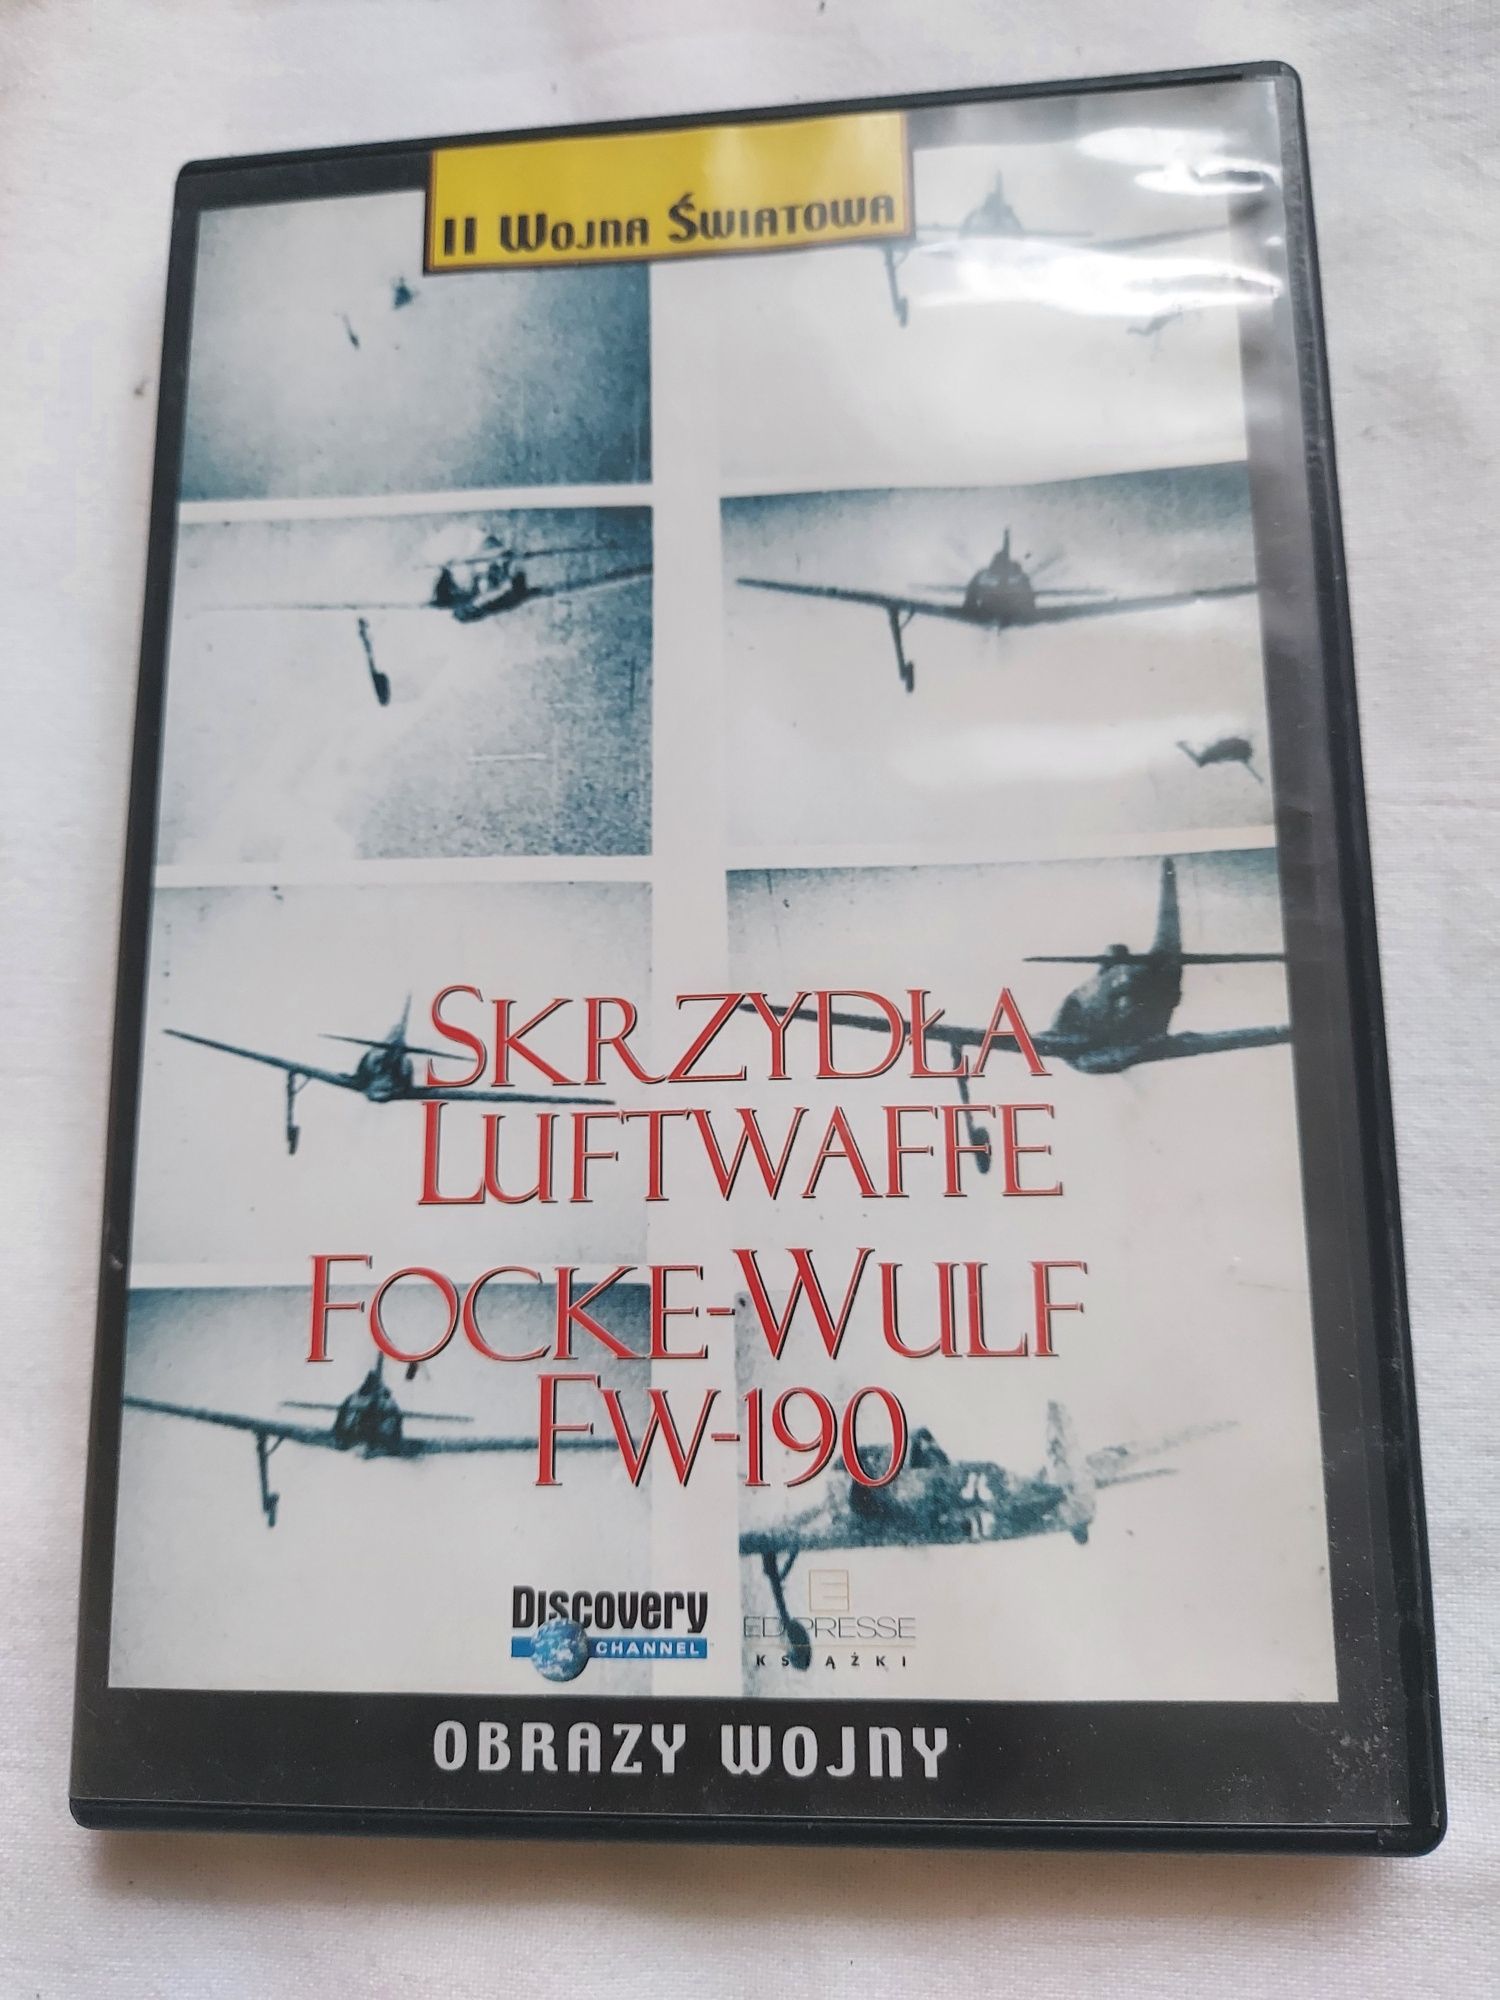 SKRZYDŁA LUFTWAFFE - Focke-Wulf FW-190 dvd